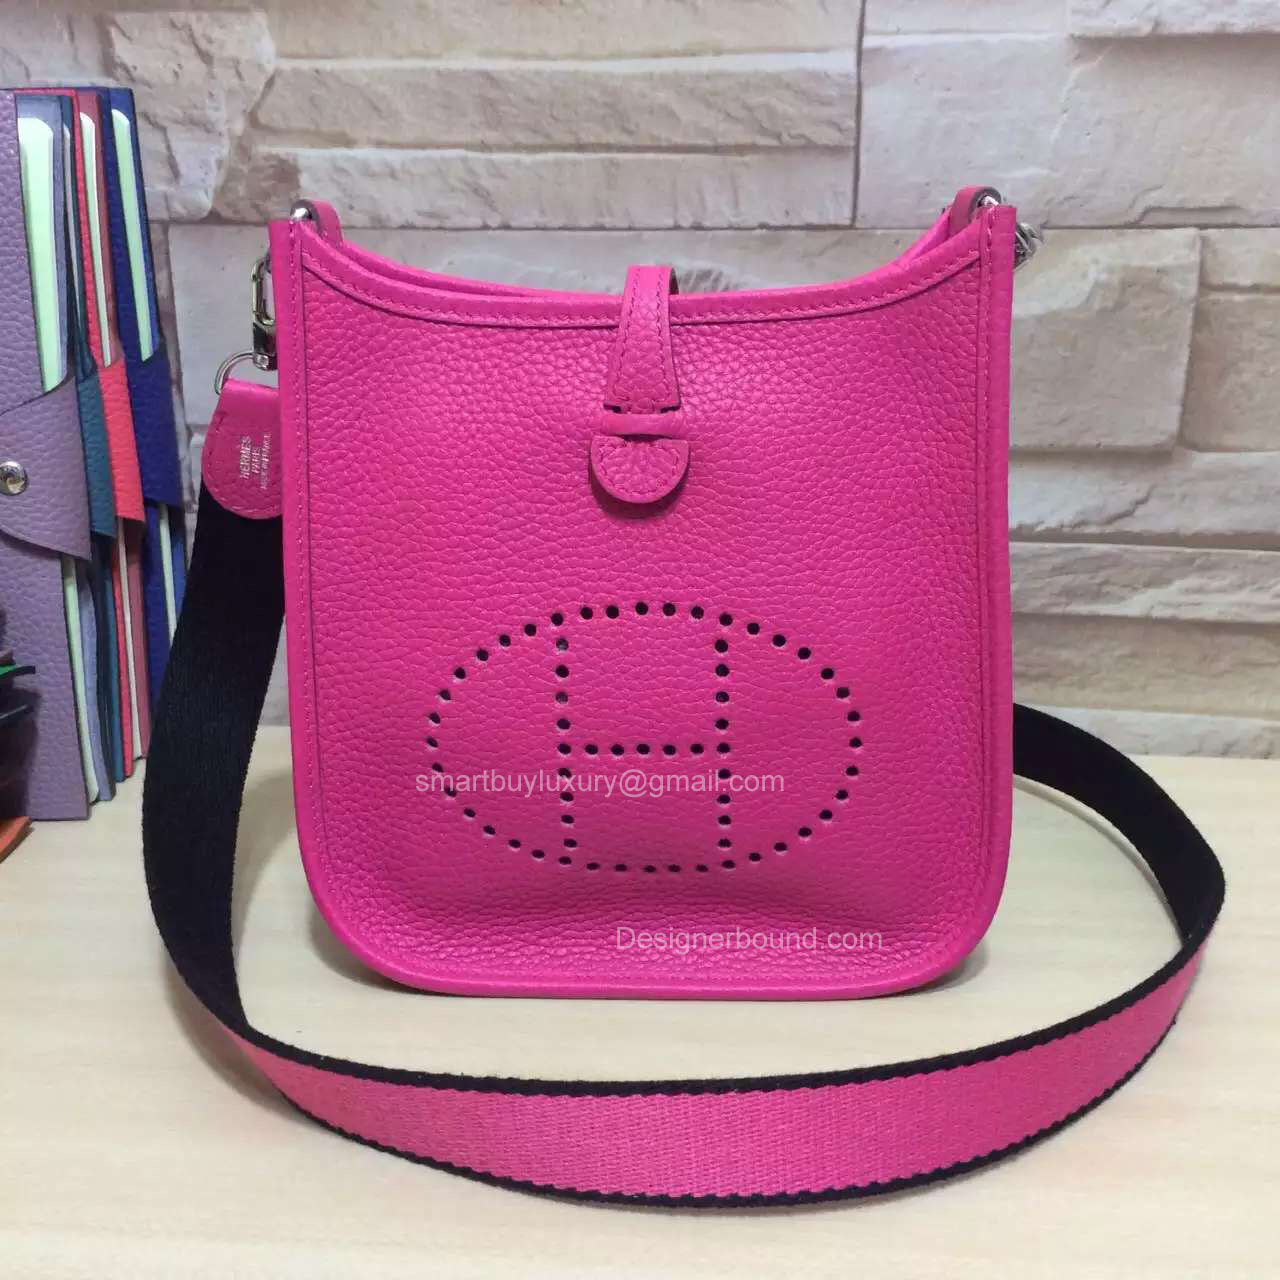 Hermes Evelyne III Bag in Hot Pink Togo Leather TPM